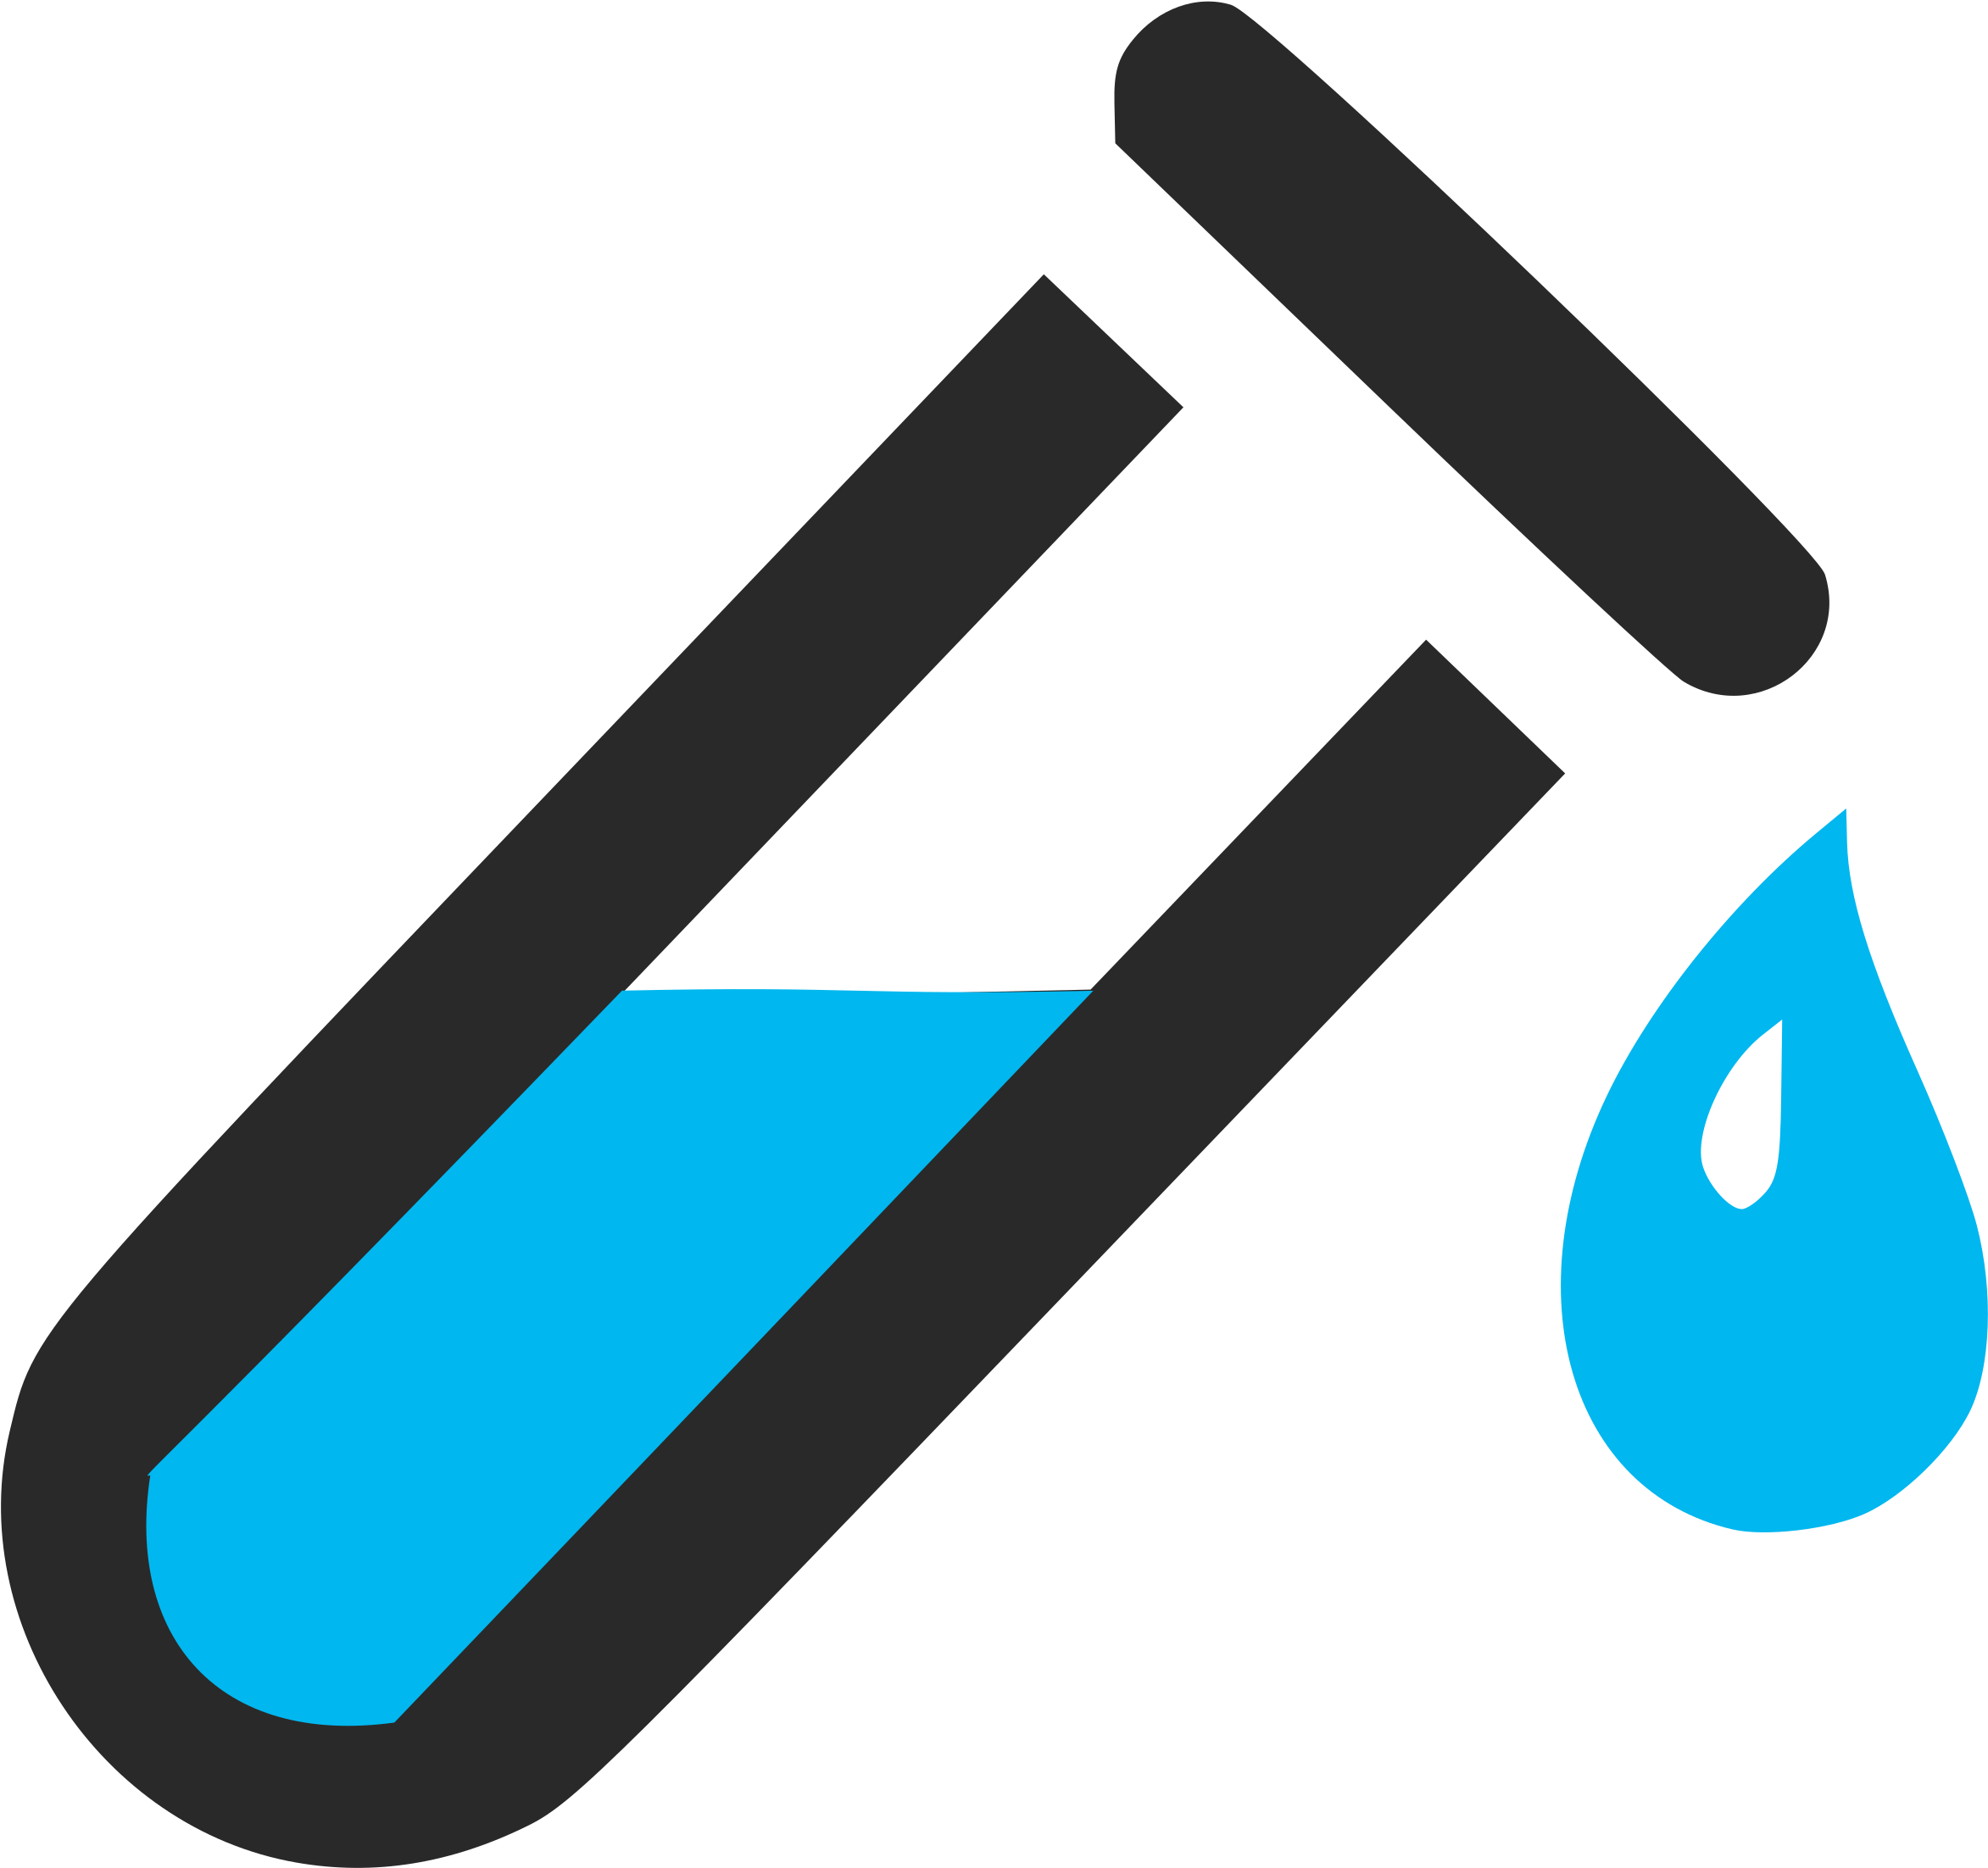 A Blue Liquid In A Test Tube